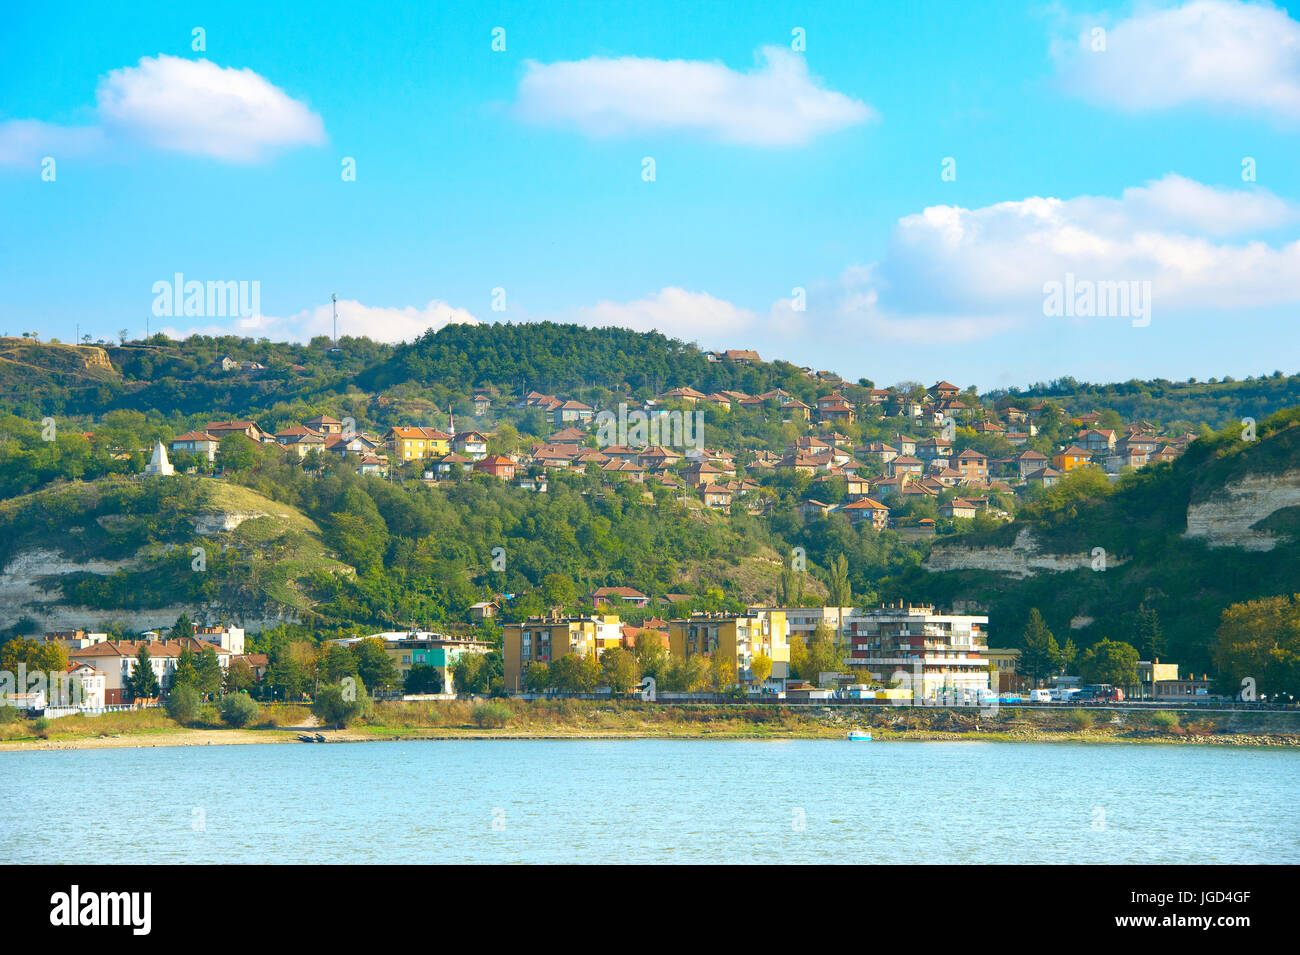 Point de vue des petites ville bulgare sur un bord du Danube. Shishtov, Bulgarie Banque D'Images